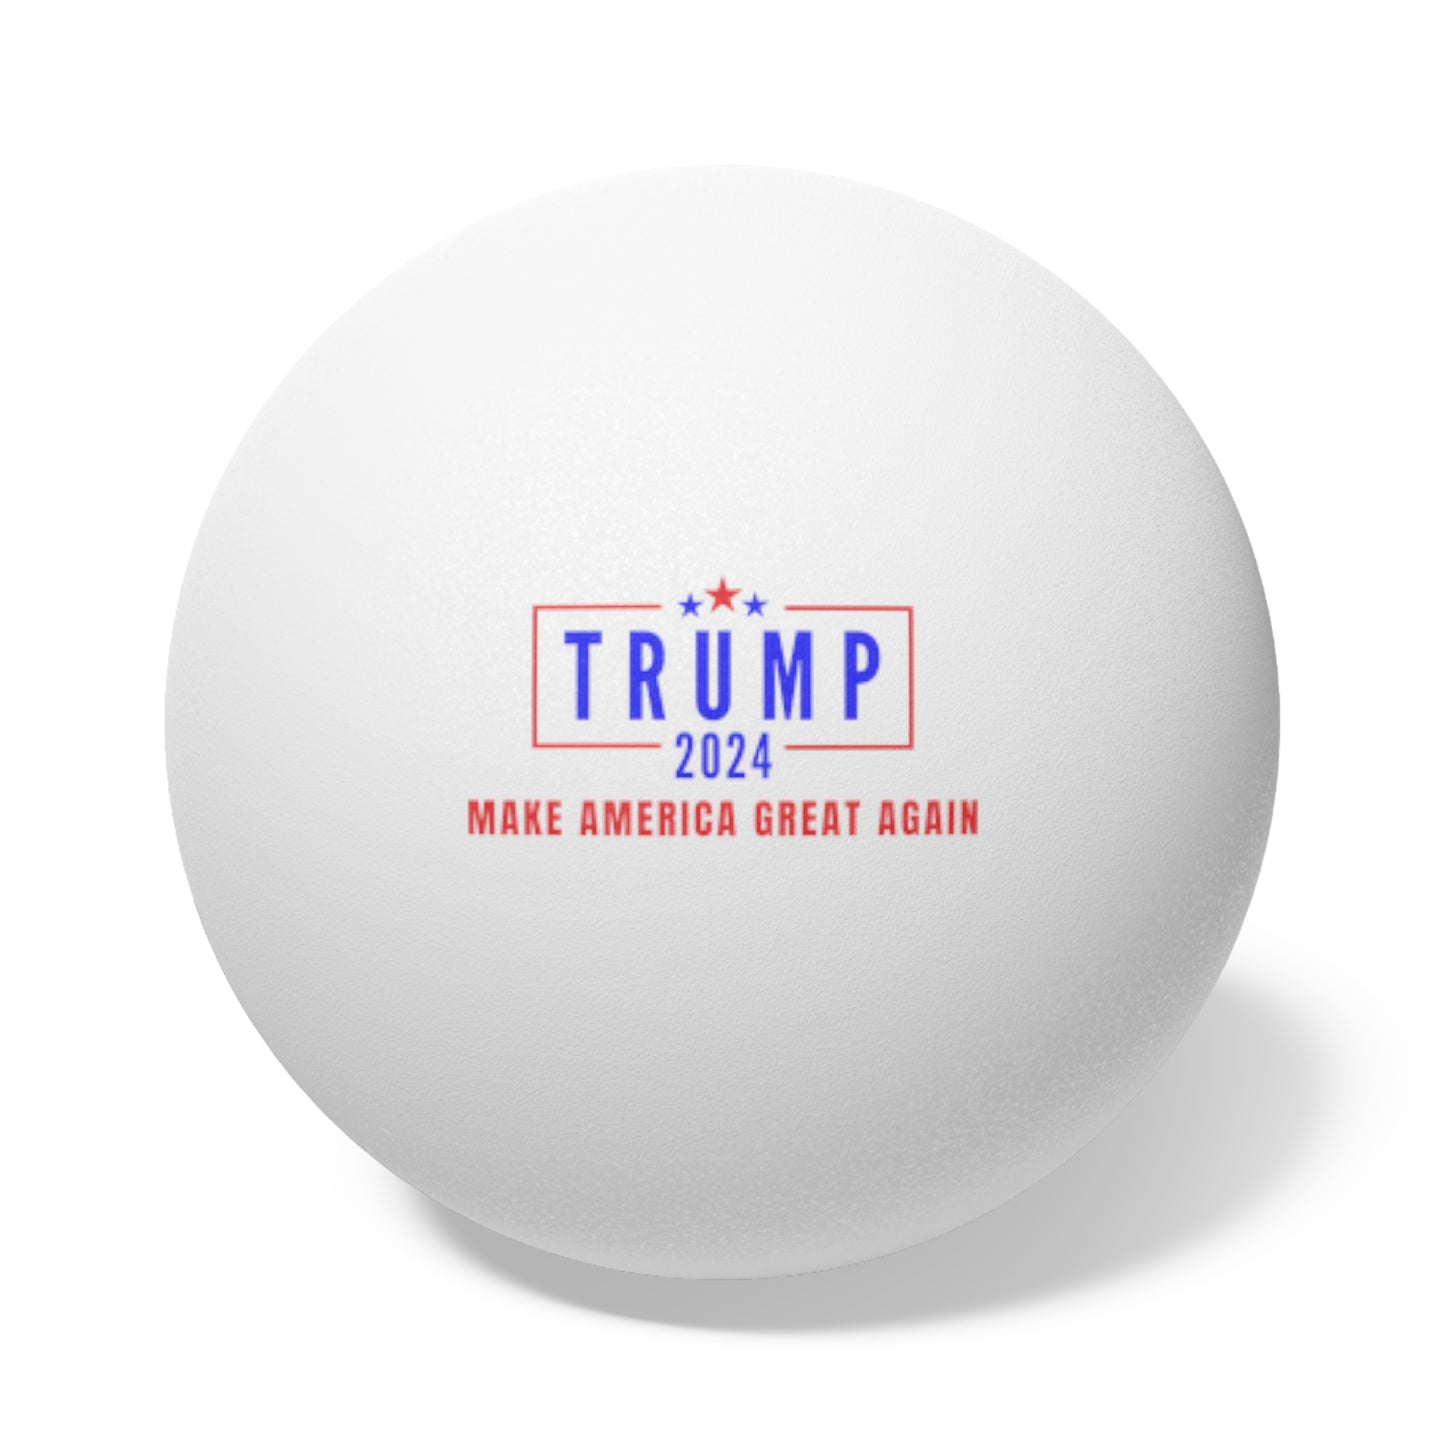 Trump 2024 Ping Pong Balls, 6 pcs